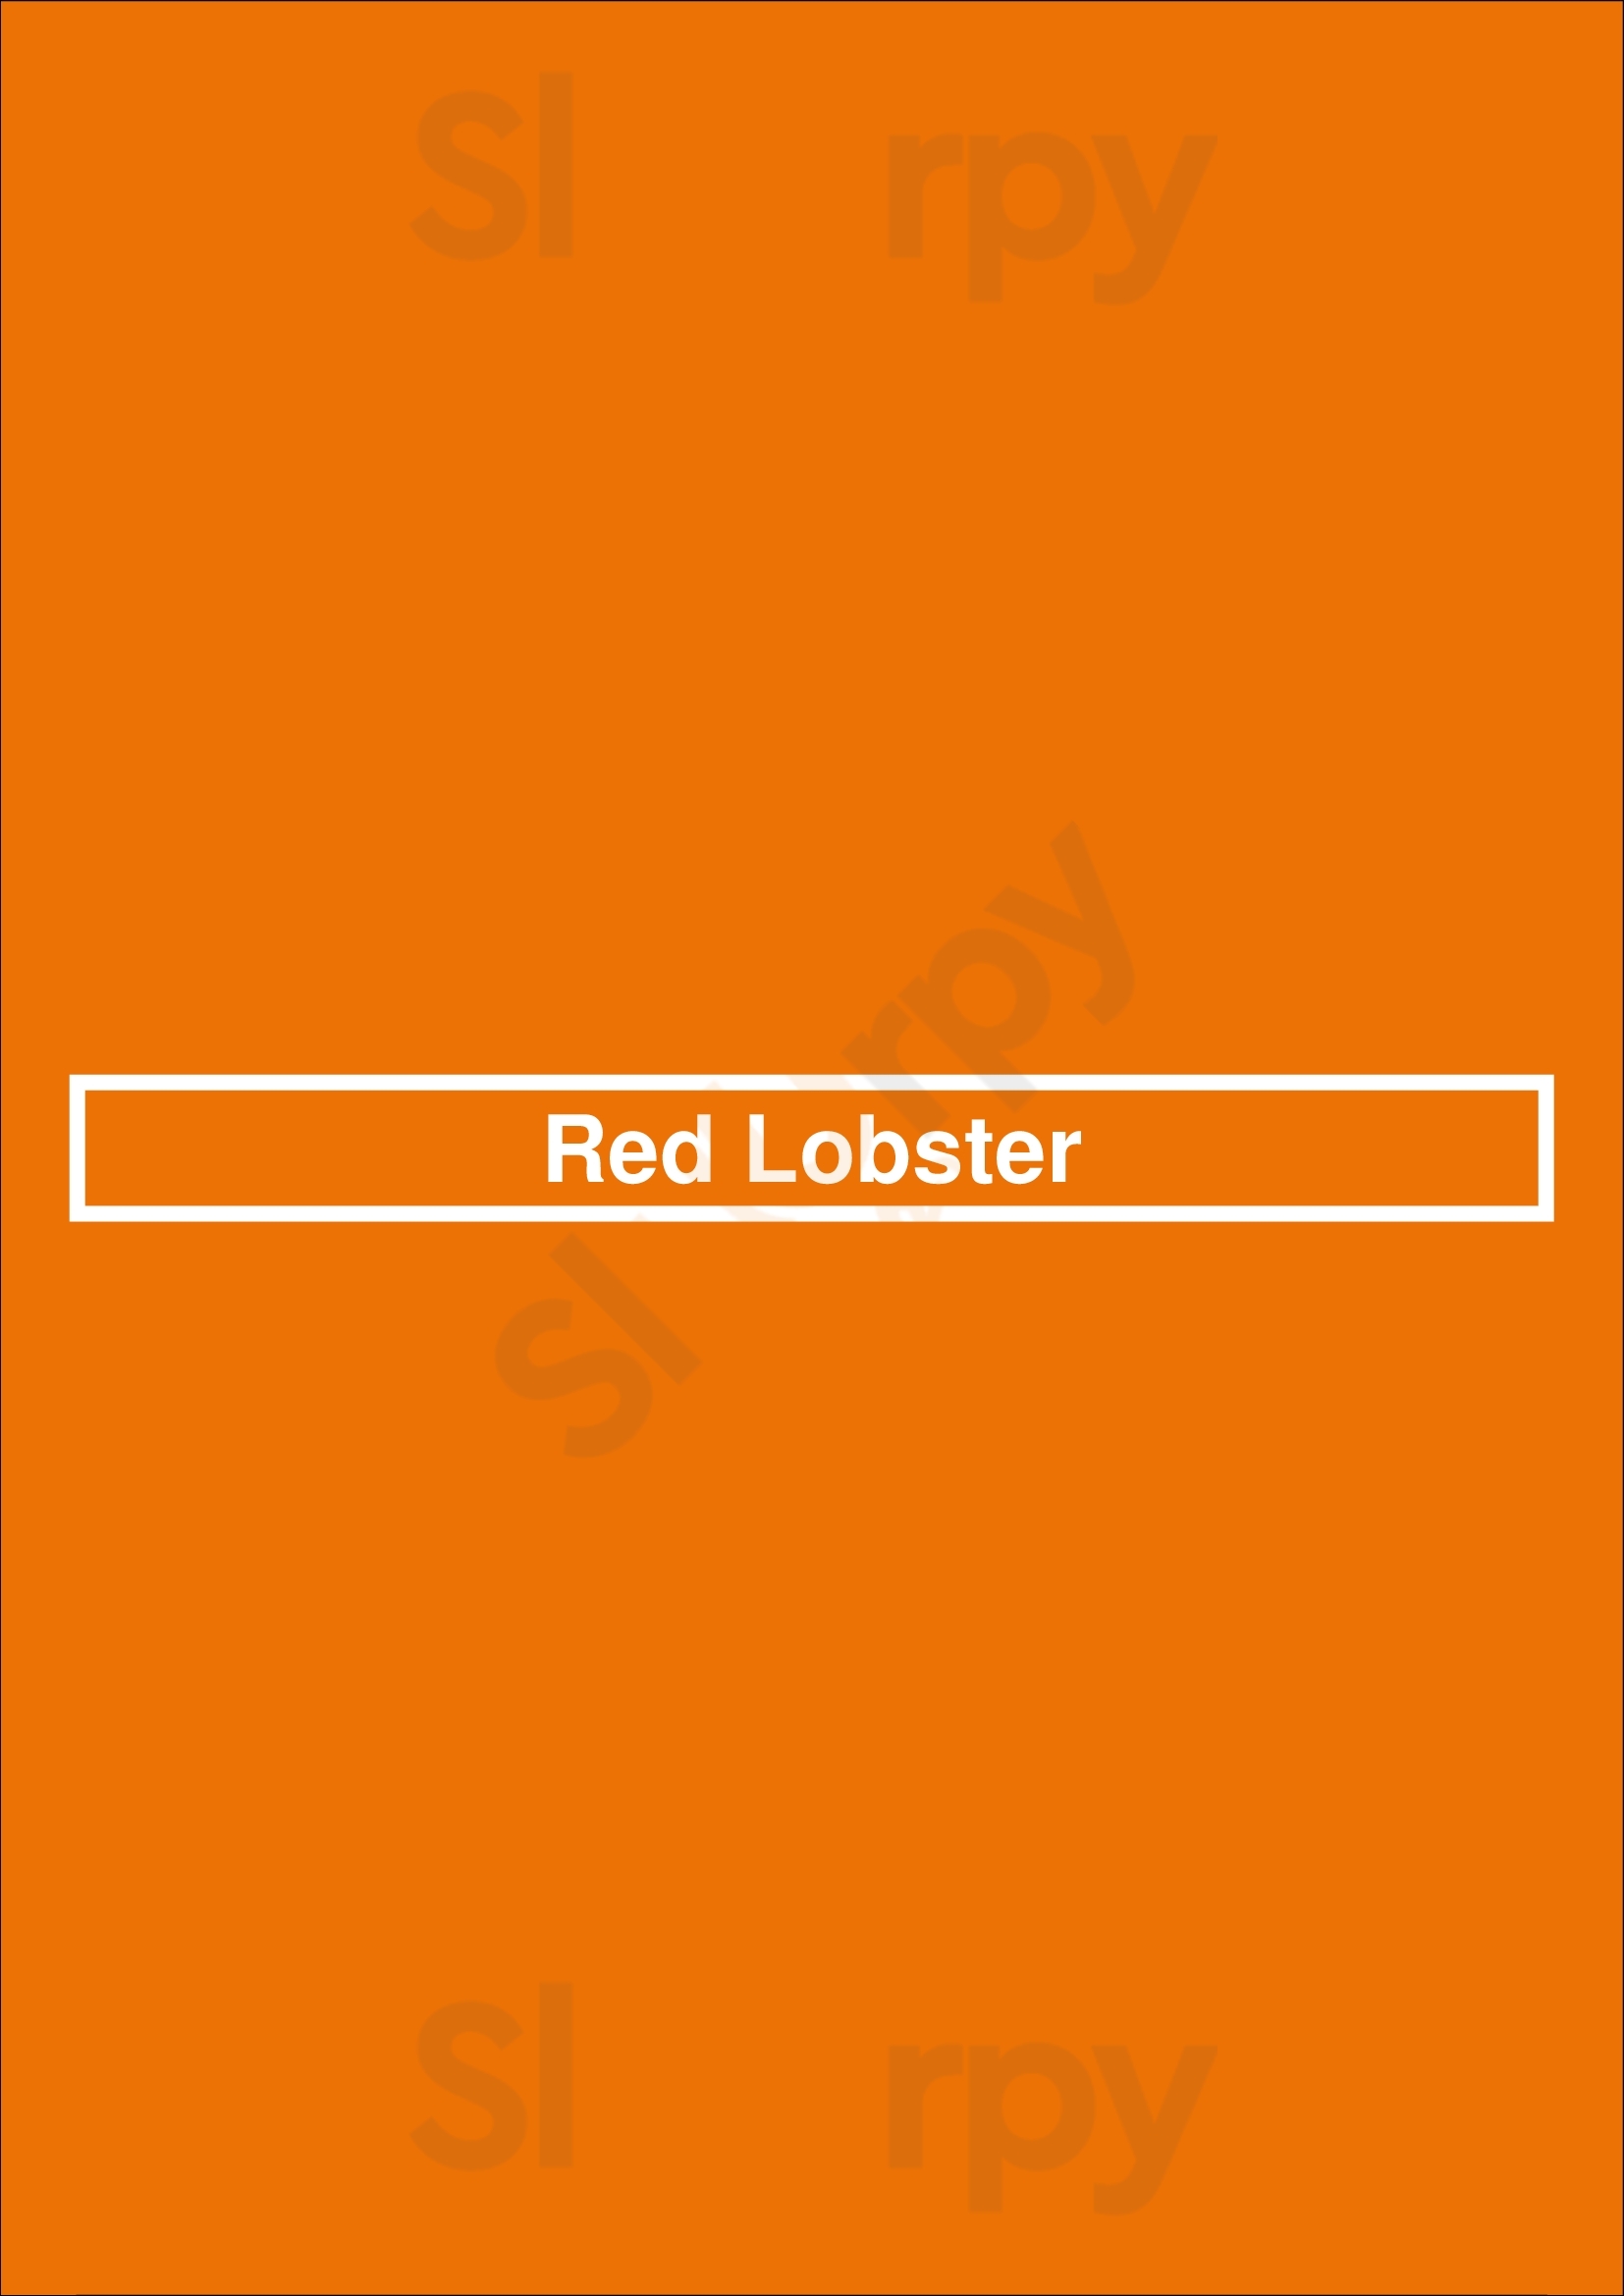 Red Lobster Barrie Menu - 1